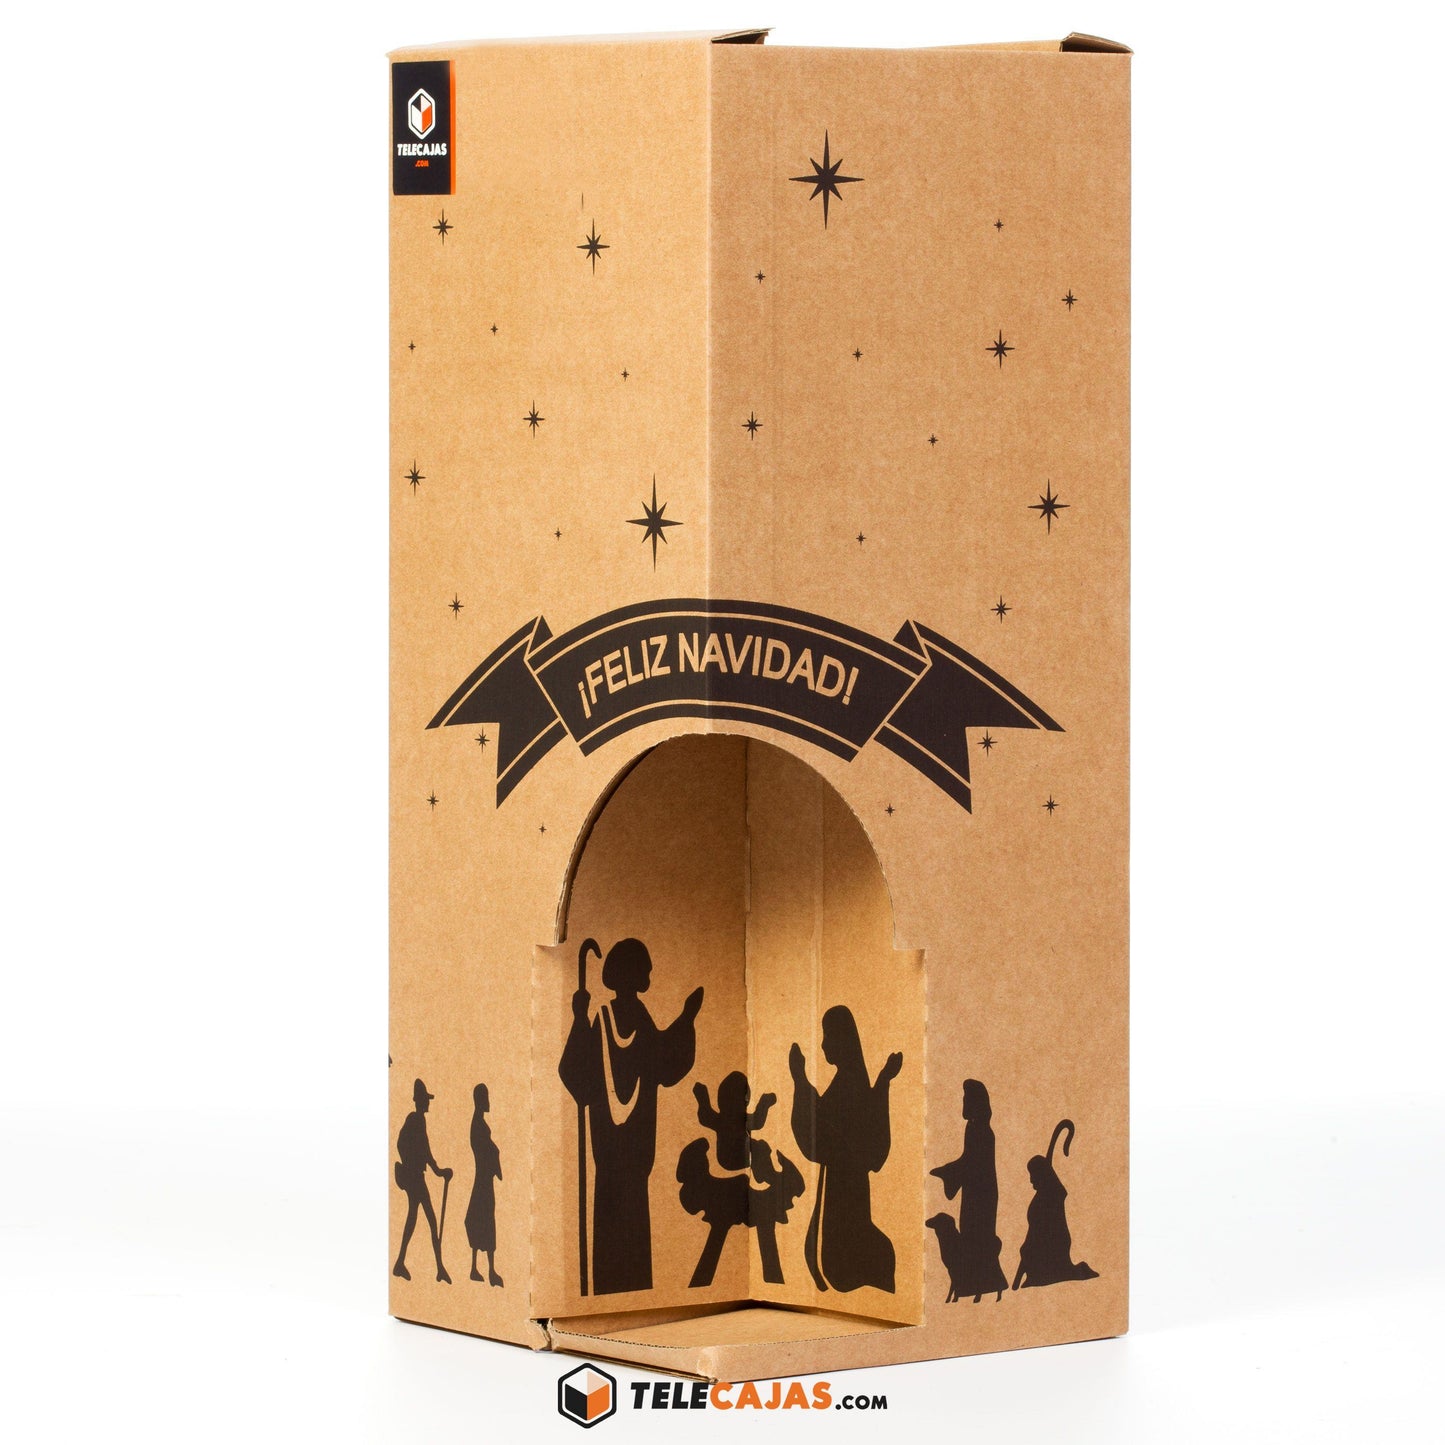 TELECAJAS | Caja Navidad Regalo 4 Botellas (Convertible Portal de Belén) | Pack de 20 cajas - TELECAJAS